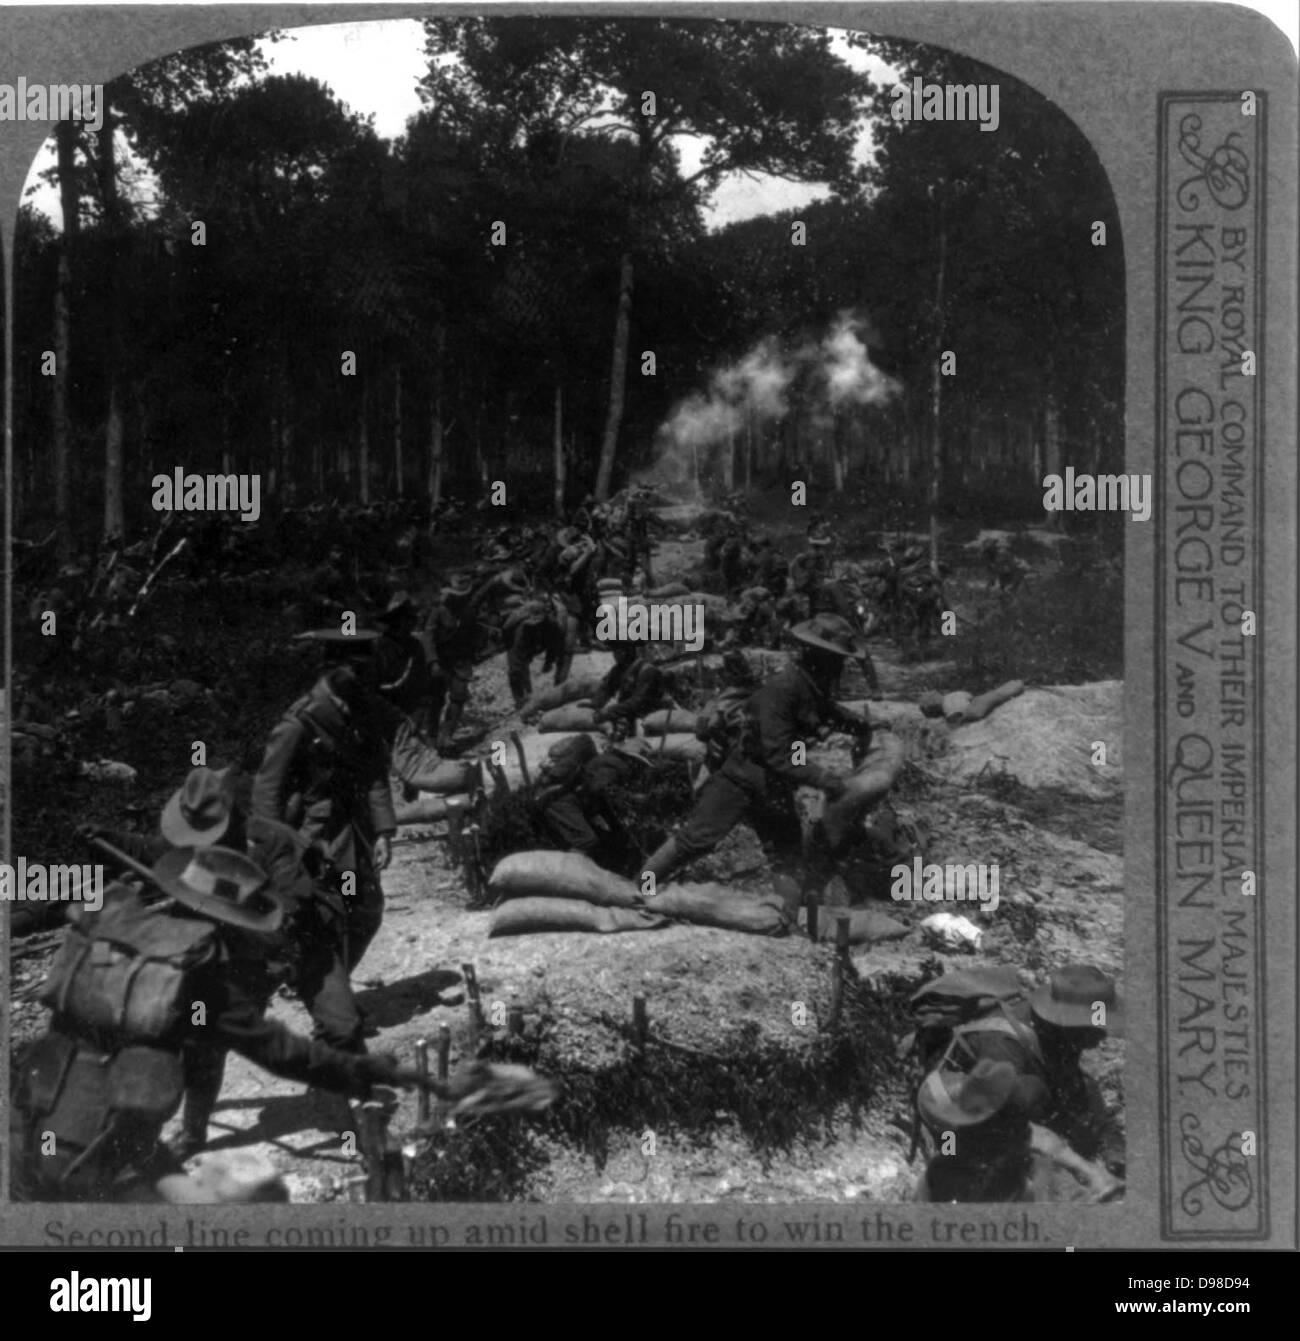 Deuxième ligne à venir sous des tirs d'obus d'obtenir une tranchée. Soldats britanniques lors de la Première Guerre mondiale, 1916. Banque D'Images